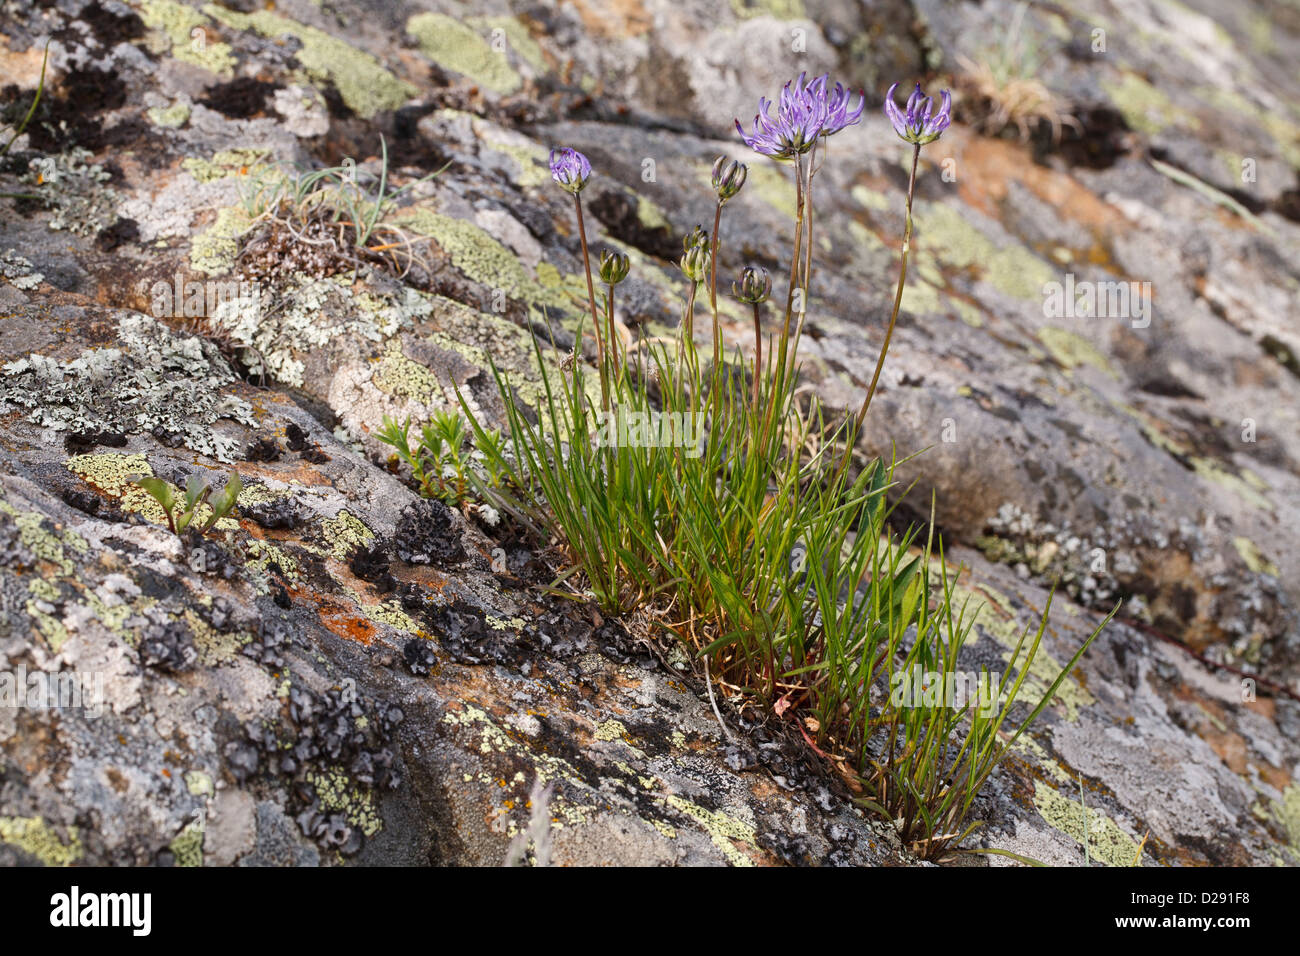 Globe-dirigé Rampion (Phyteuma hemisphaericum) floraison. Émergeant d'une fissure dans la roche de granit. Pyrénées-Orientales, France. Banque D'Images